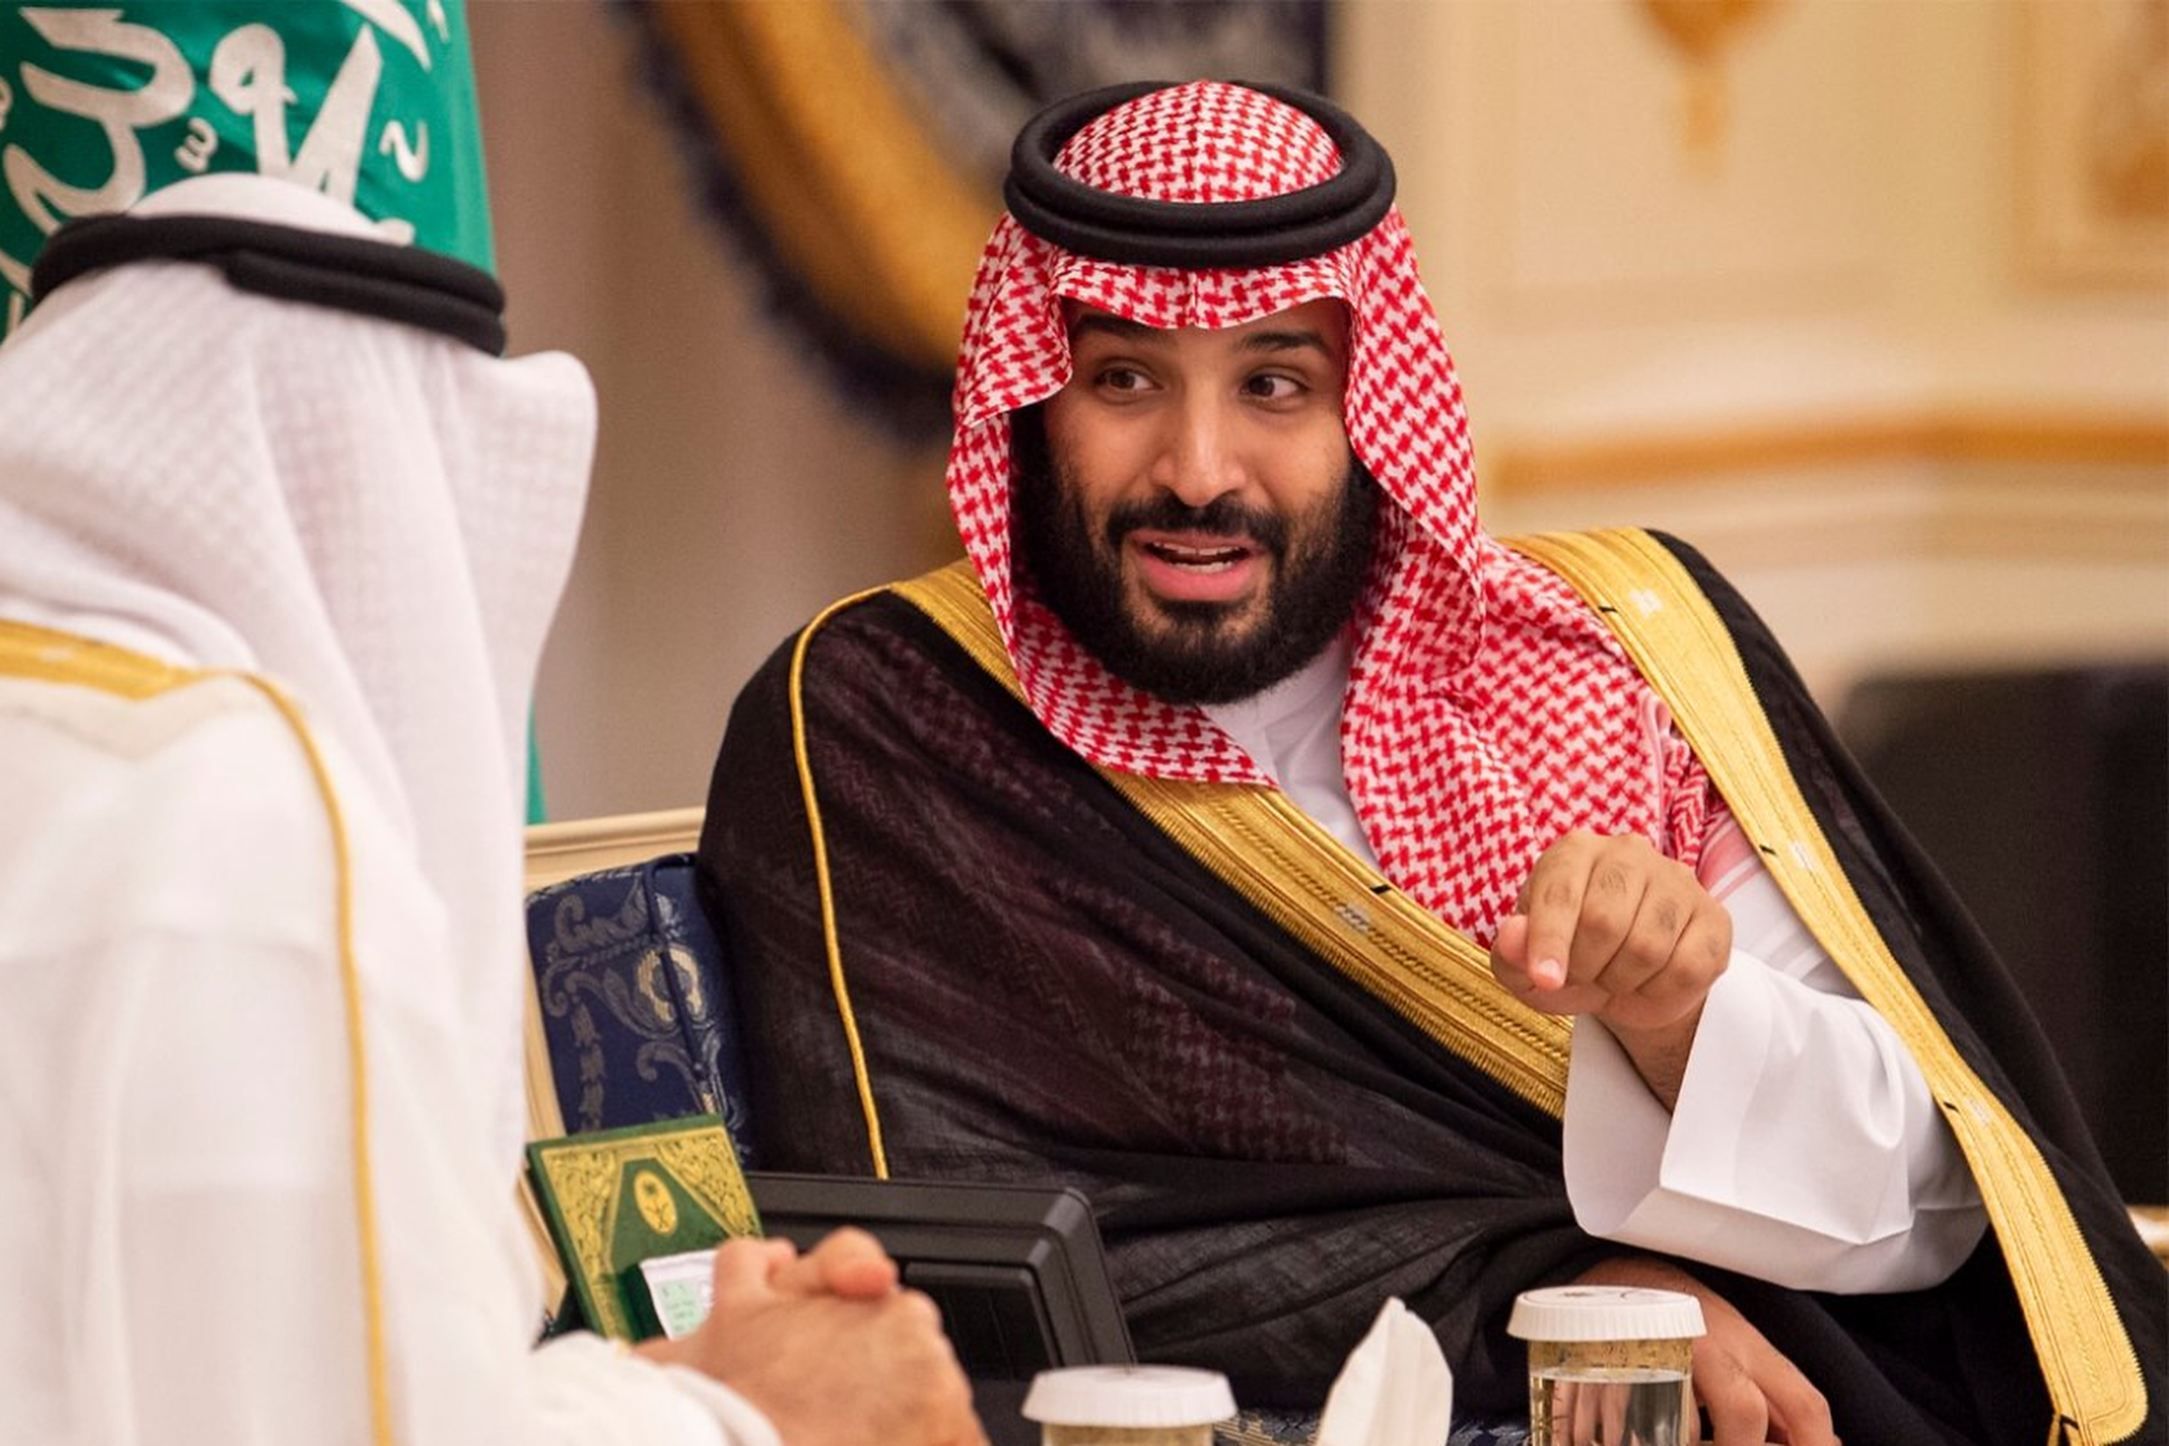 Sumele colosale oferite şi beneficiile de ”prinţi” au făcut Arabia Saudită un magnet pentru vedetele din fotbal 